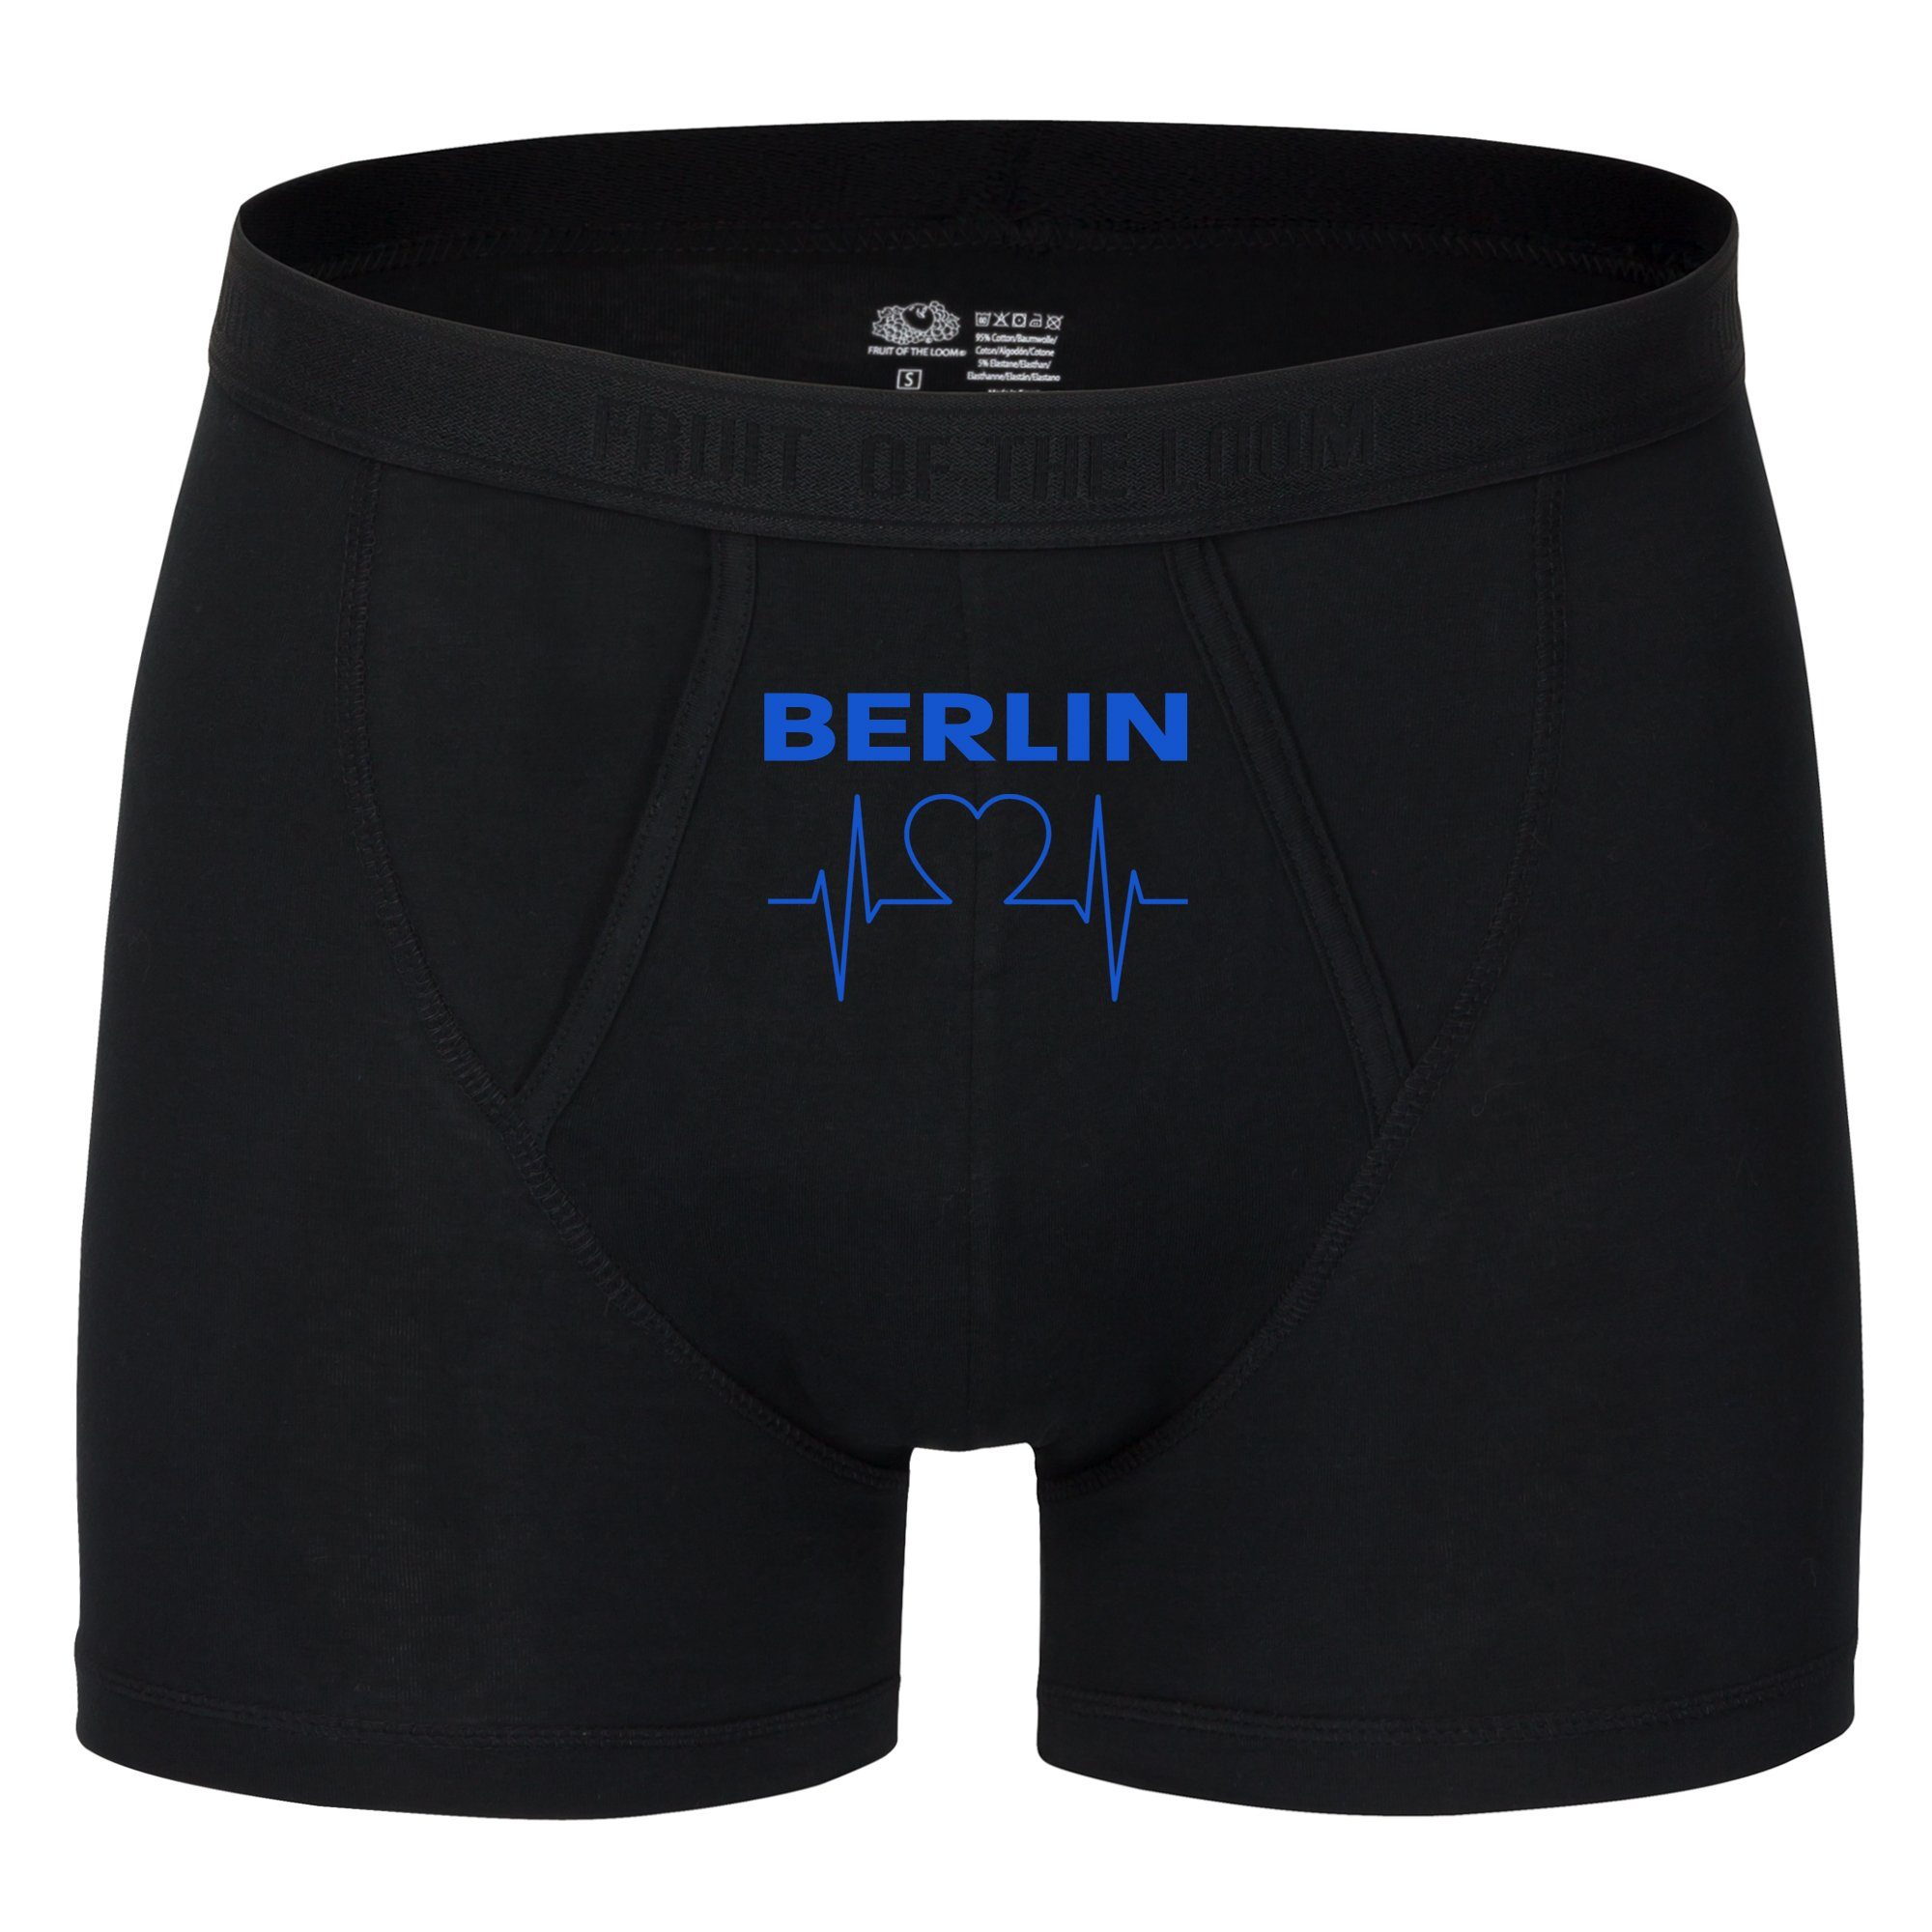 multifanshop Boxershorts Berlin blau - Herzschlag - Unterwäsche